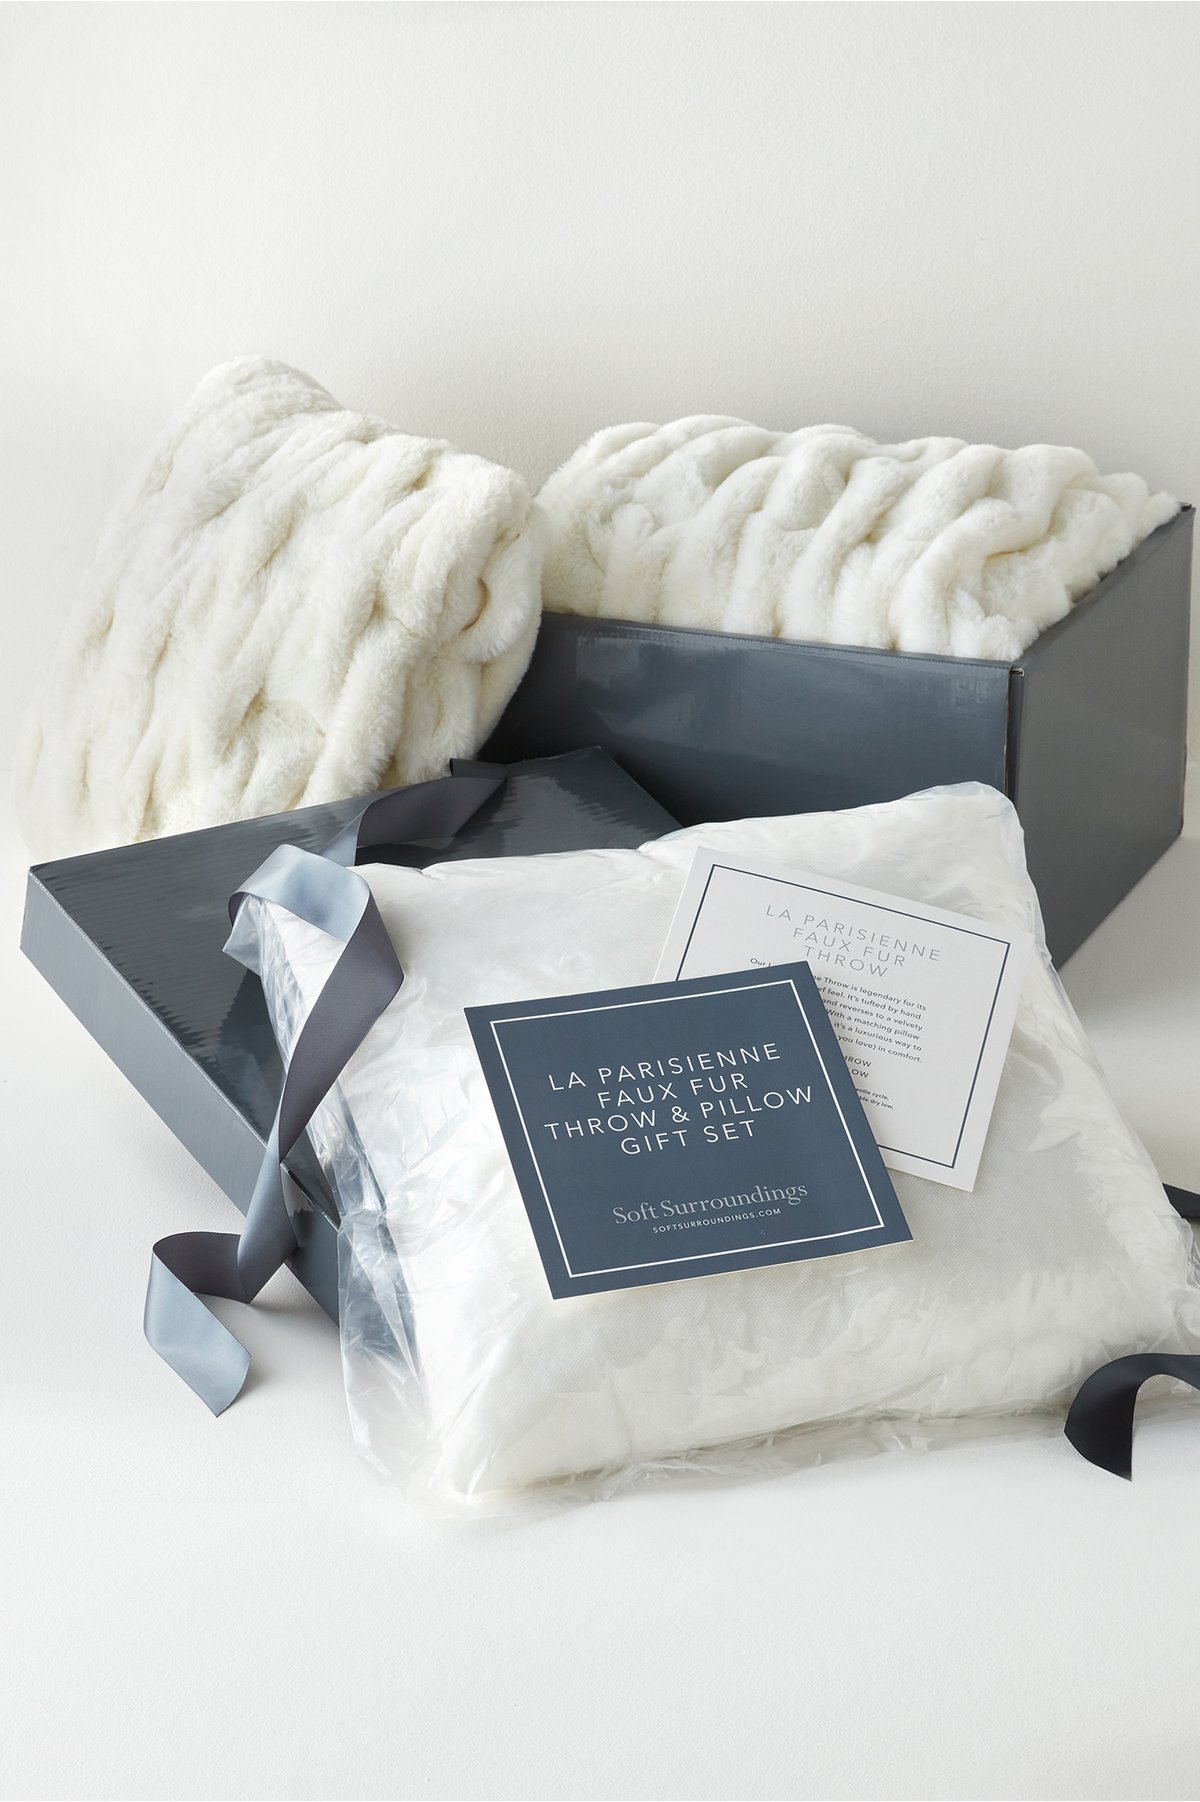 La Parisienne Gift Box Bundle by Soft Surroundings...